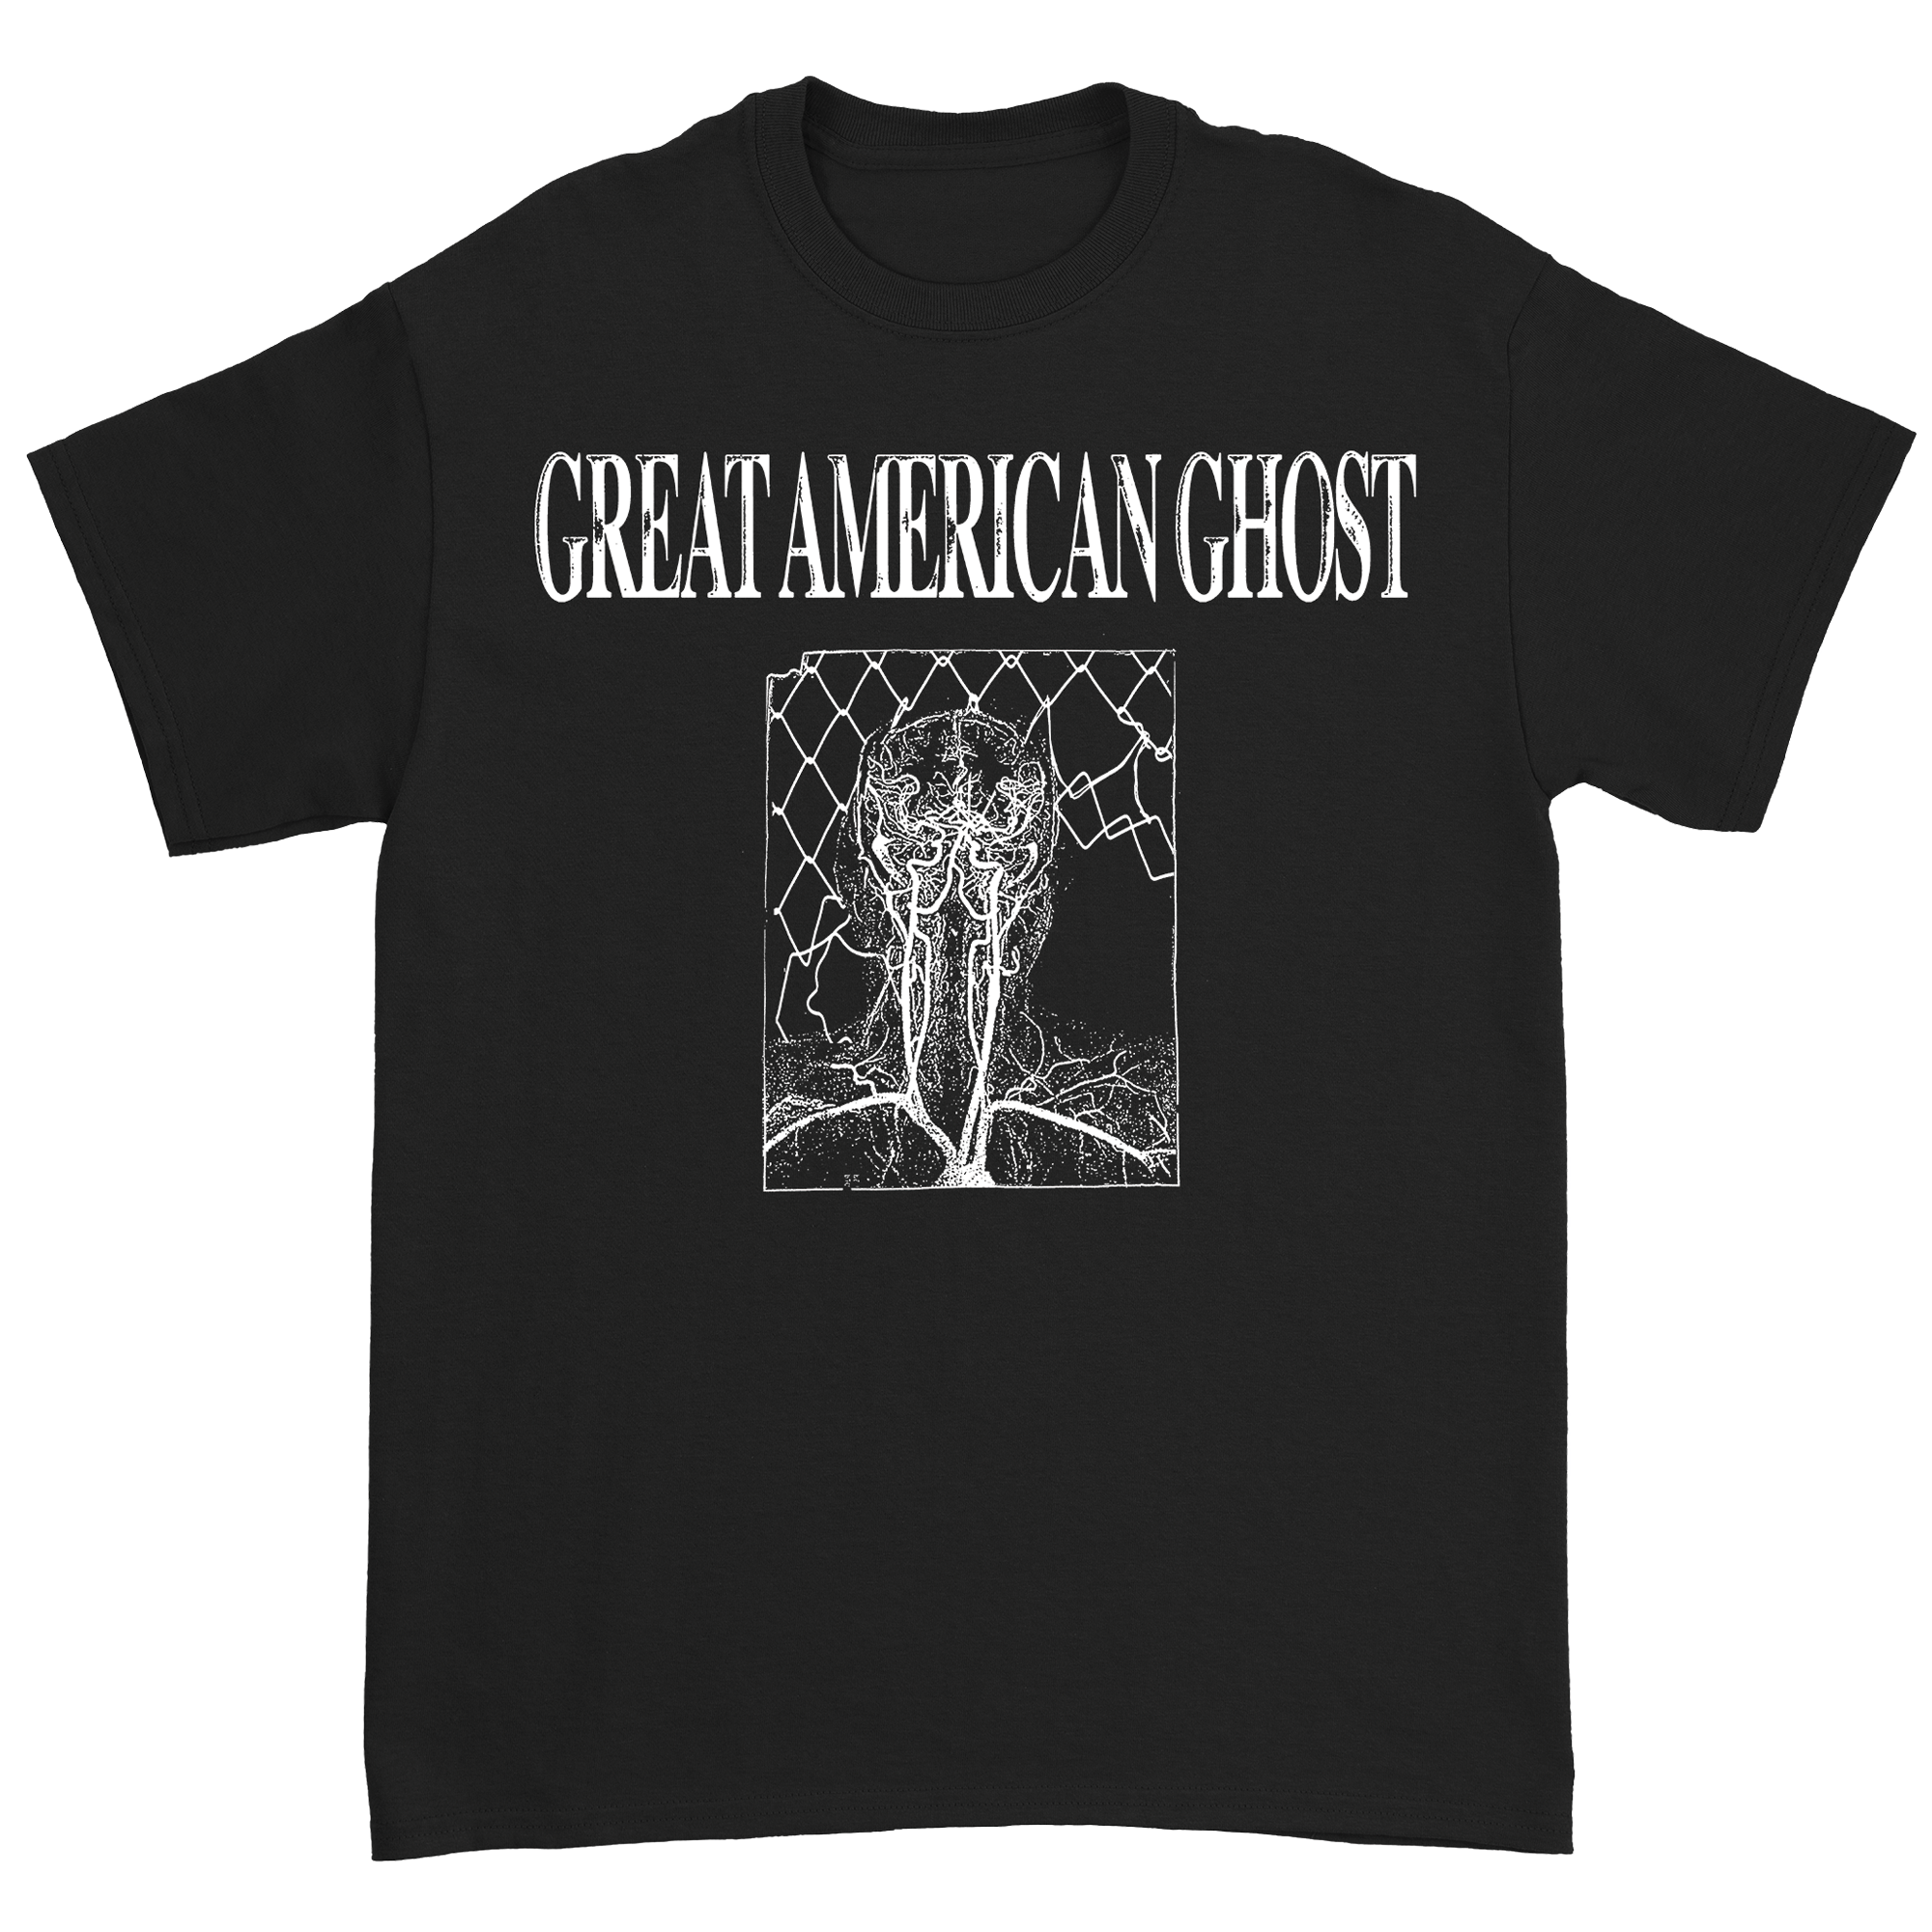 Great American Ghost - Circulatory T-Shirt (Pre-Order)